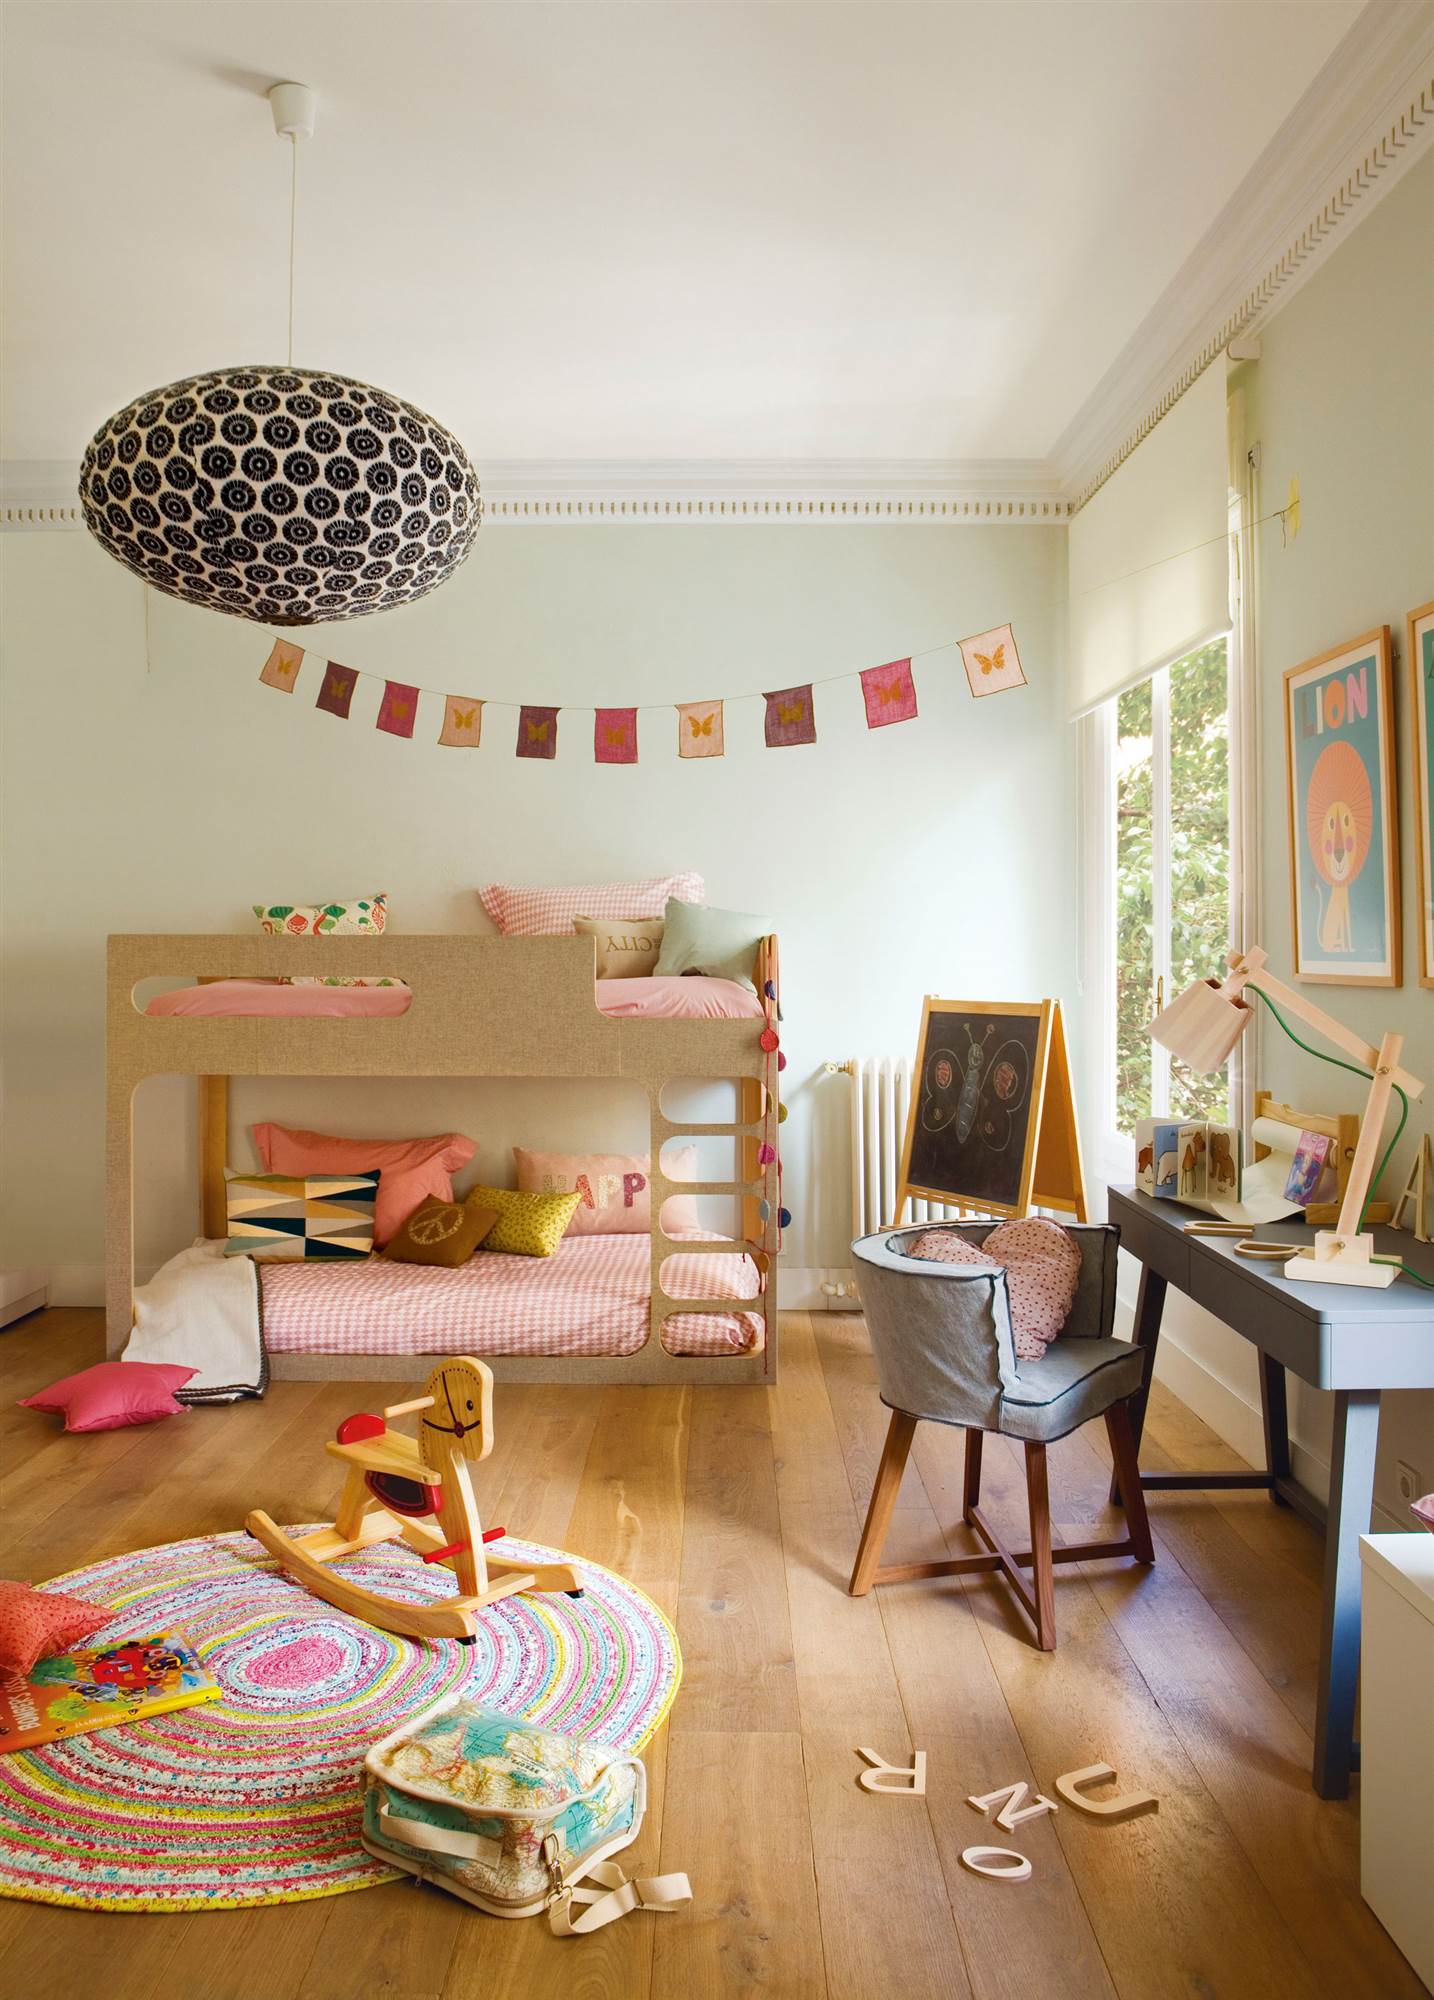 Habitación infantil colorida con litera, escritorio con silla, alfombra multicolor y guirnalda.